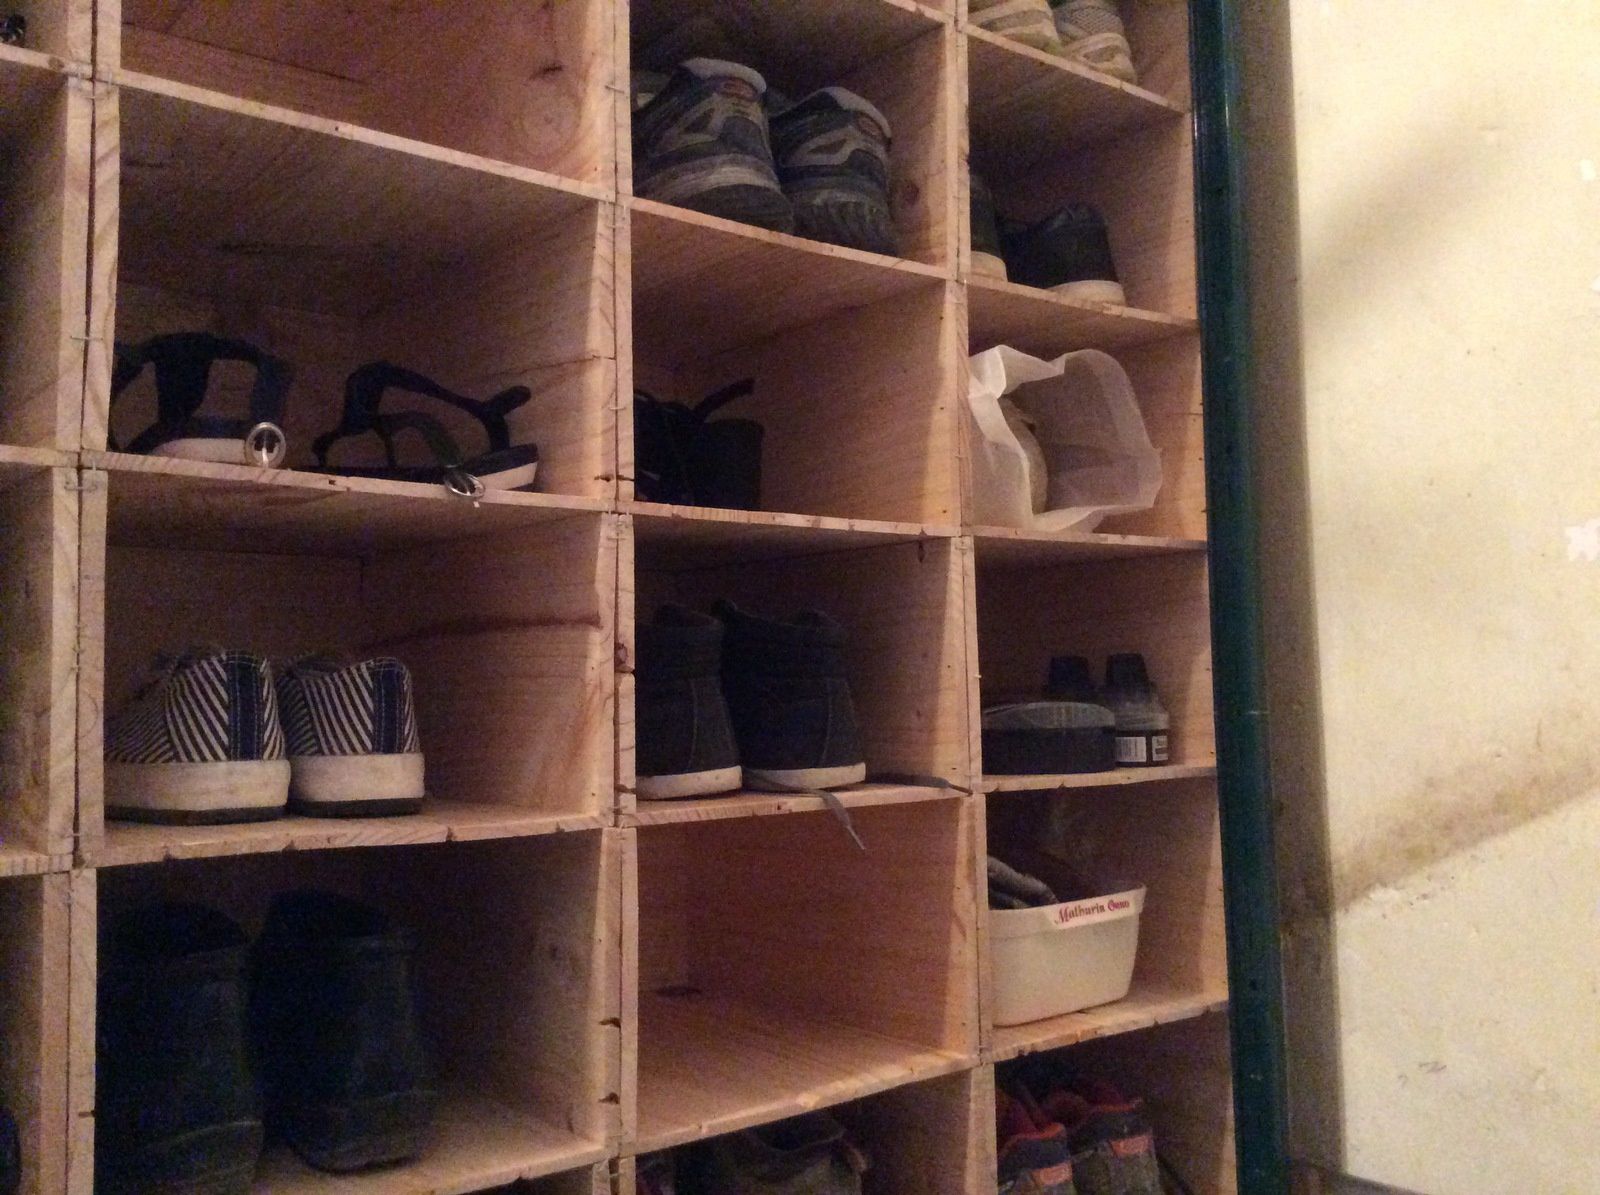 Rangement à chaussures avec caisses à vin - Le blog de nicolepinpin